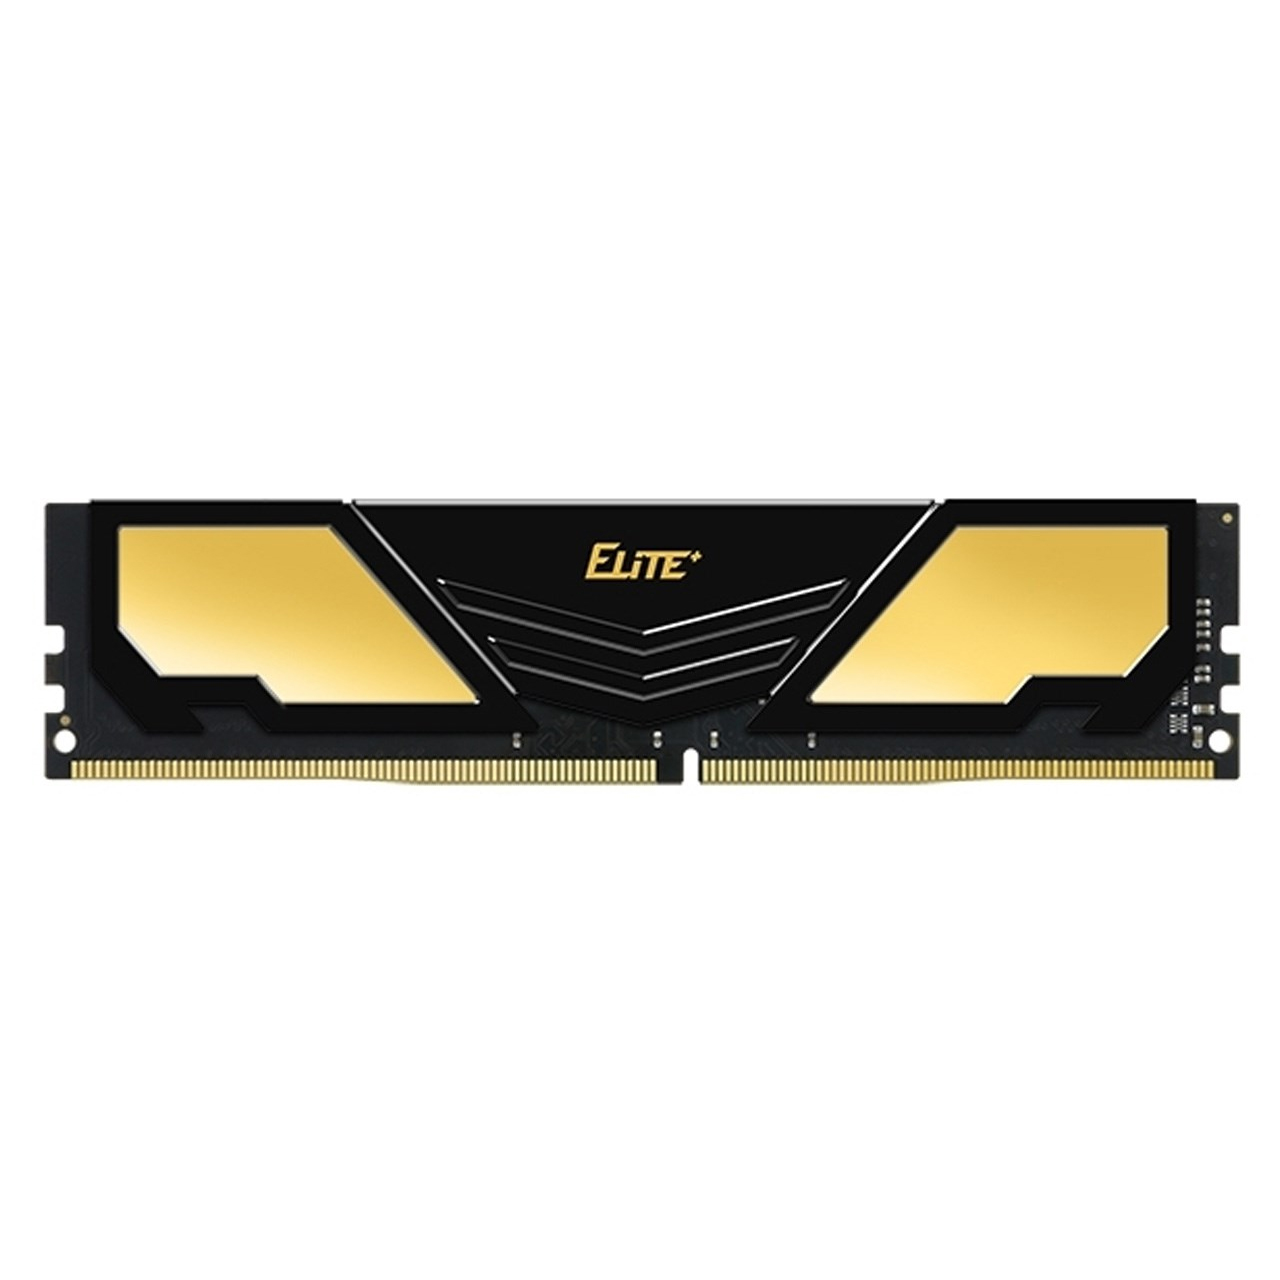 رم دسکتاپ DDR4 تک کاناله 2400 مگاهرتز CL16 تیم گروپ مدل Elite Plus ظرفیت 4 گیگابایت